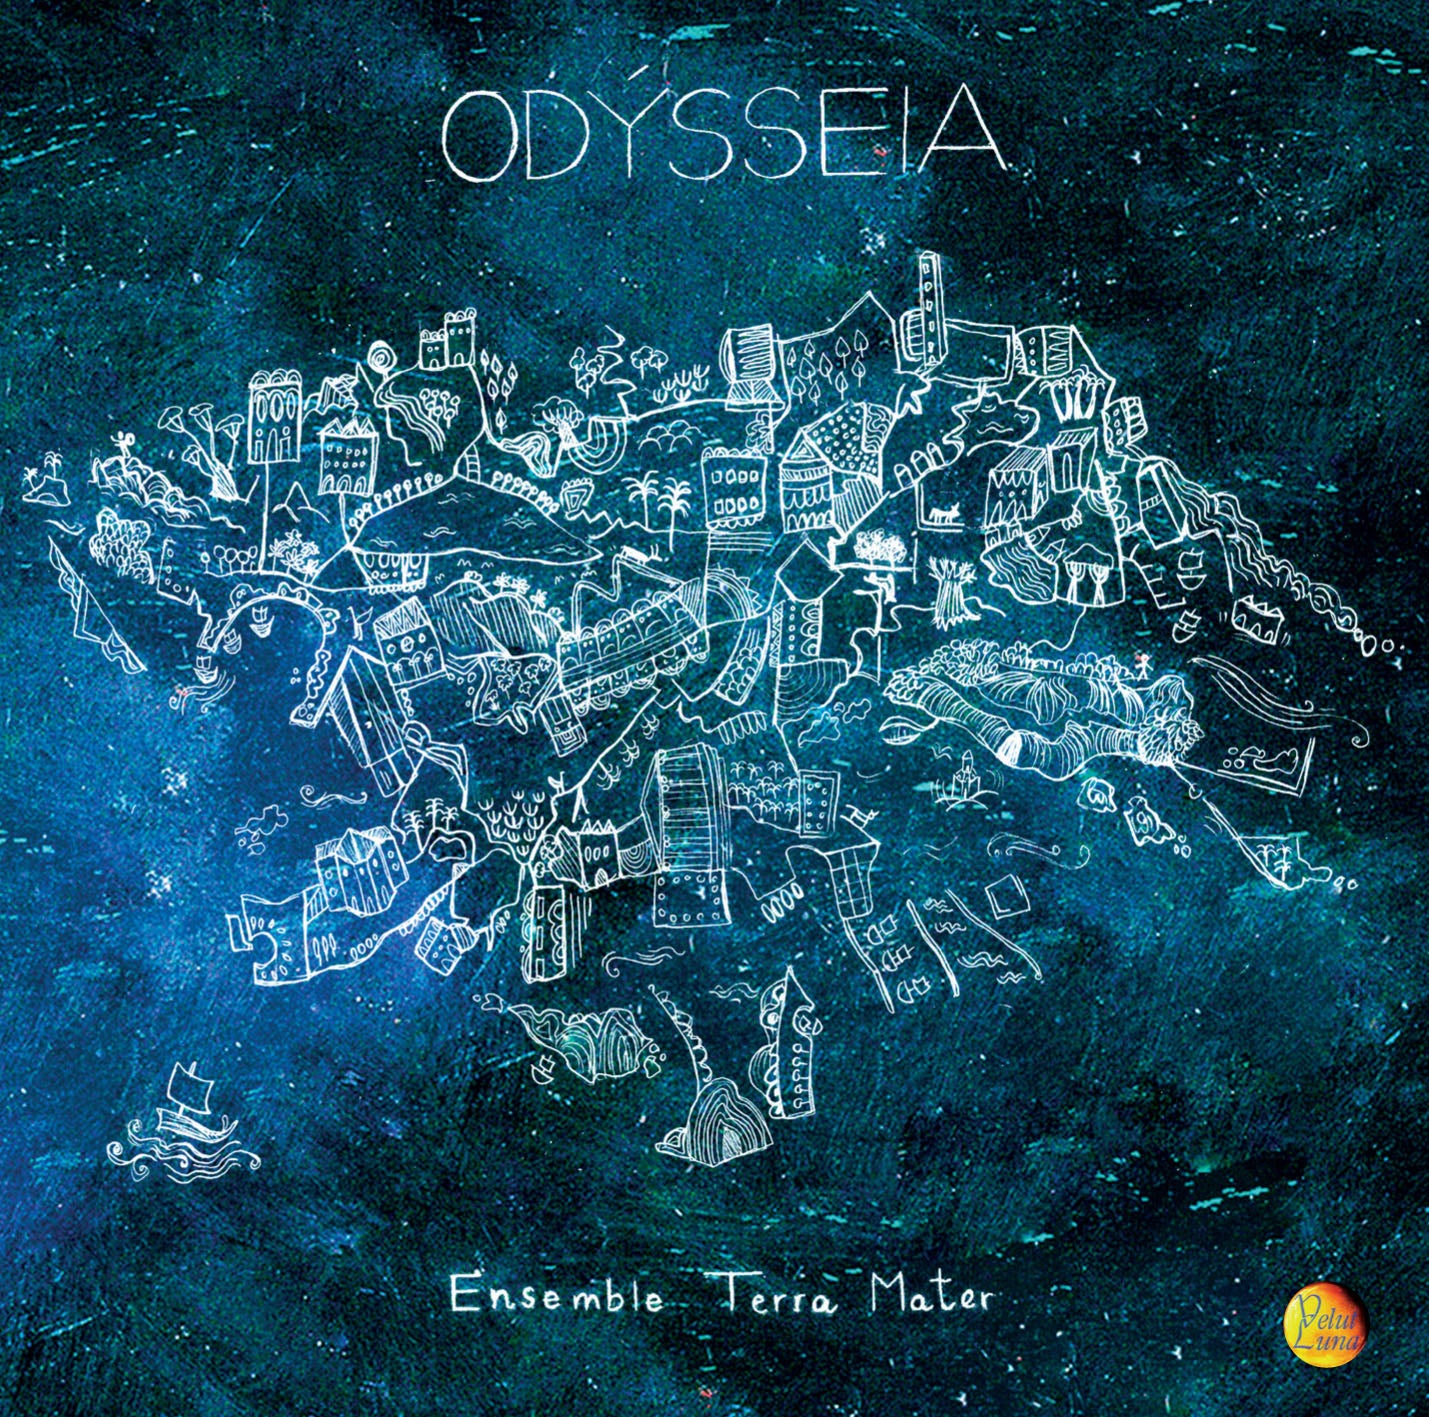 ODYSSEIA - Ensemble Terra Mater